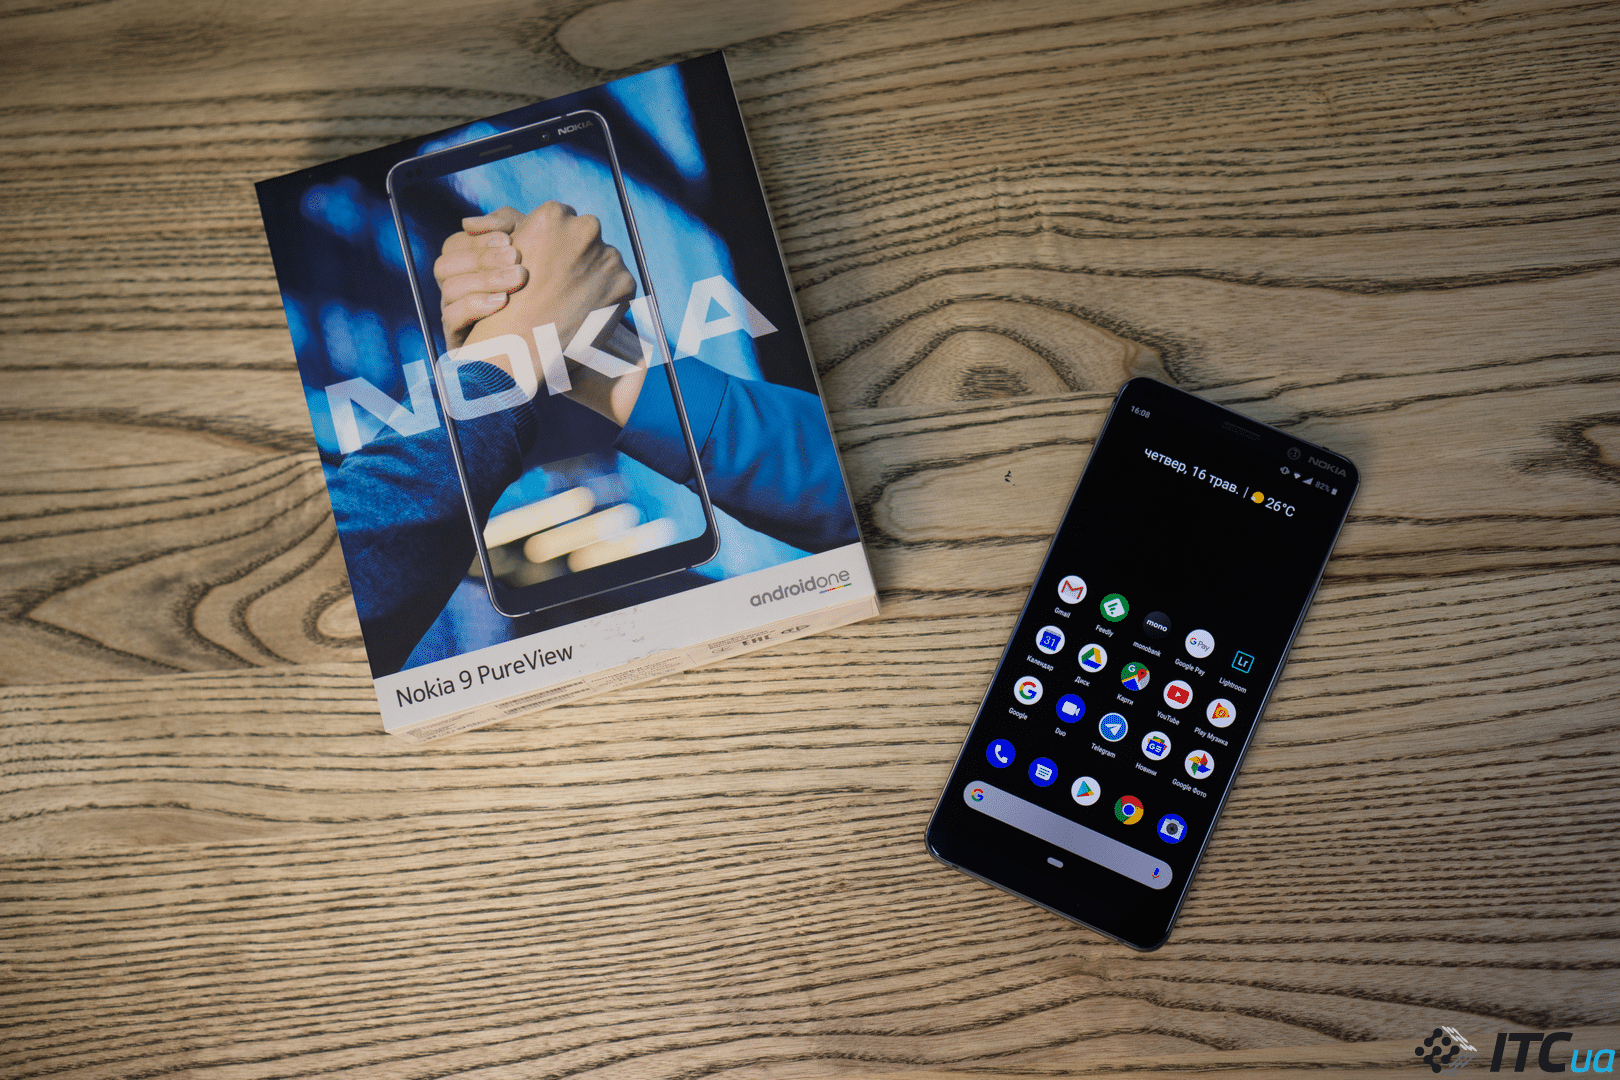 Nokia 9 design